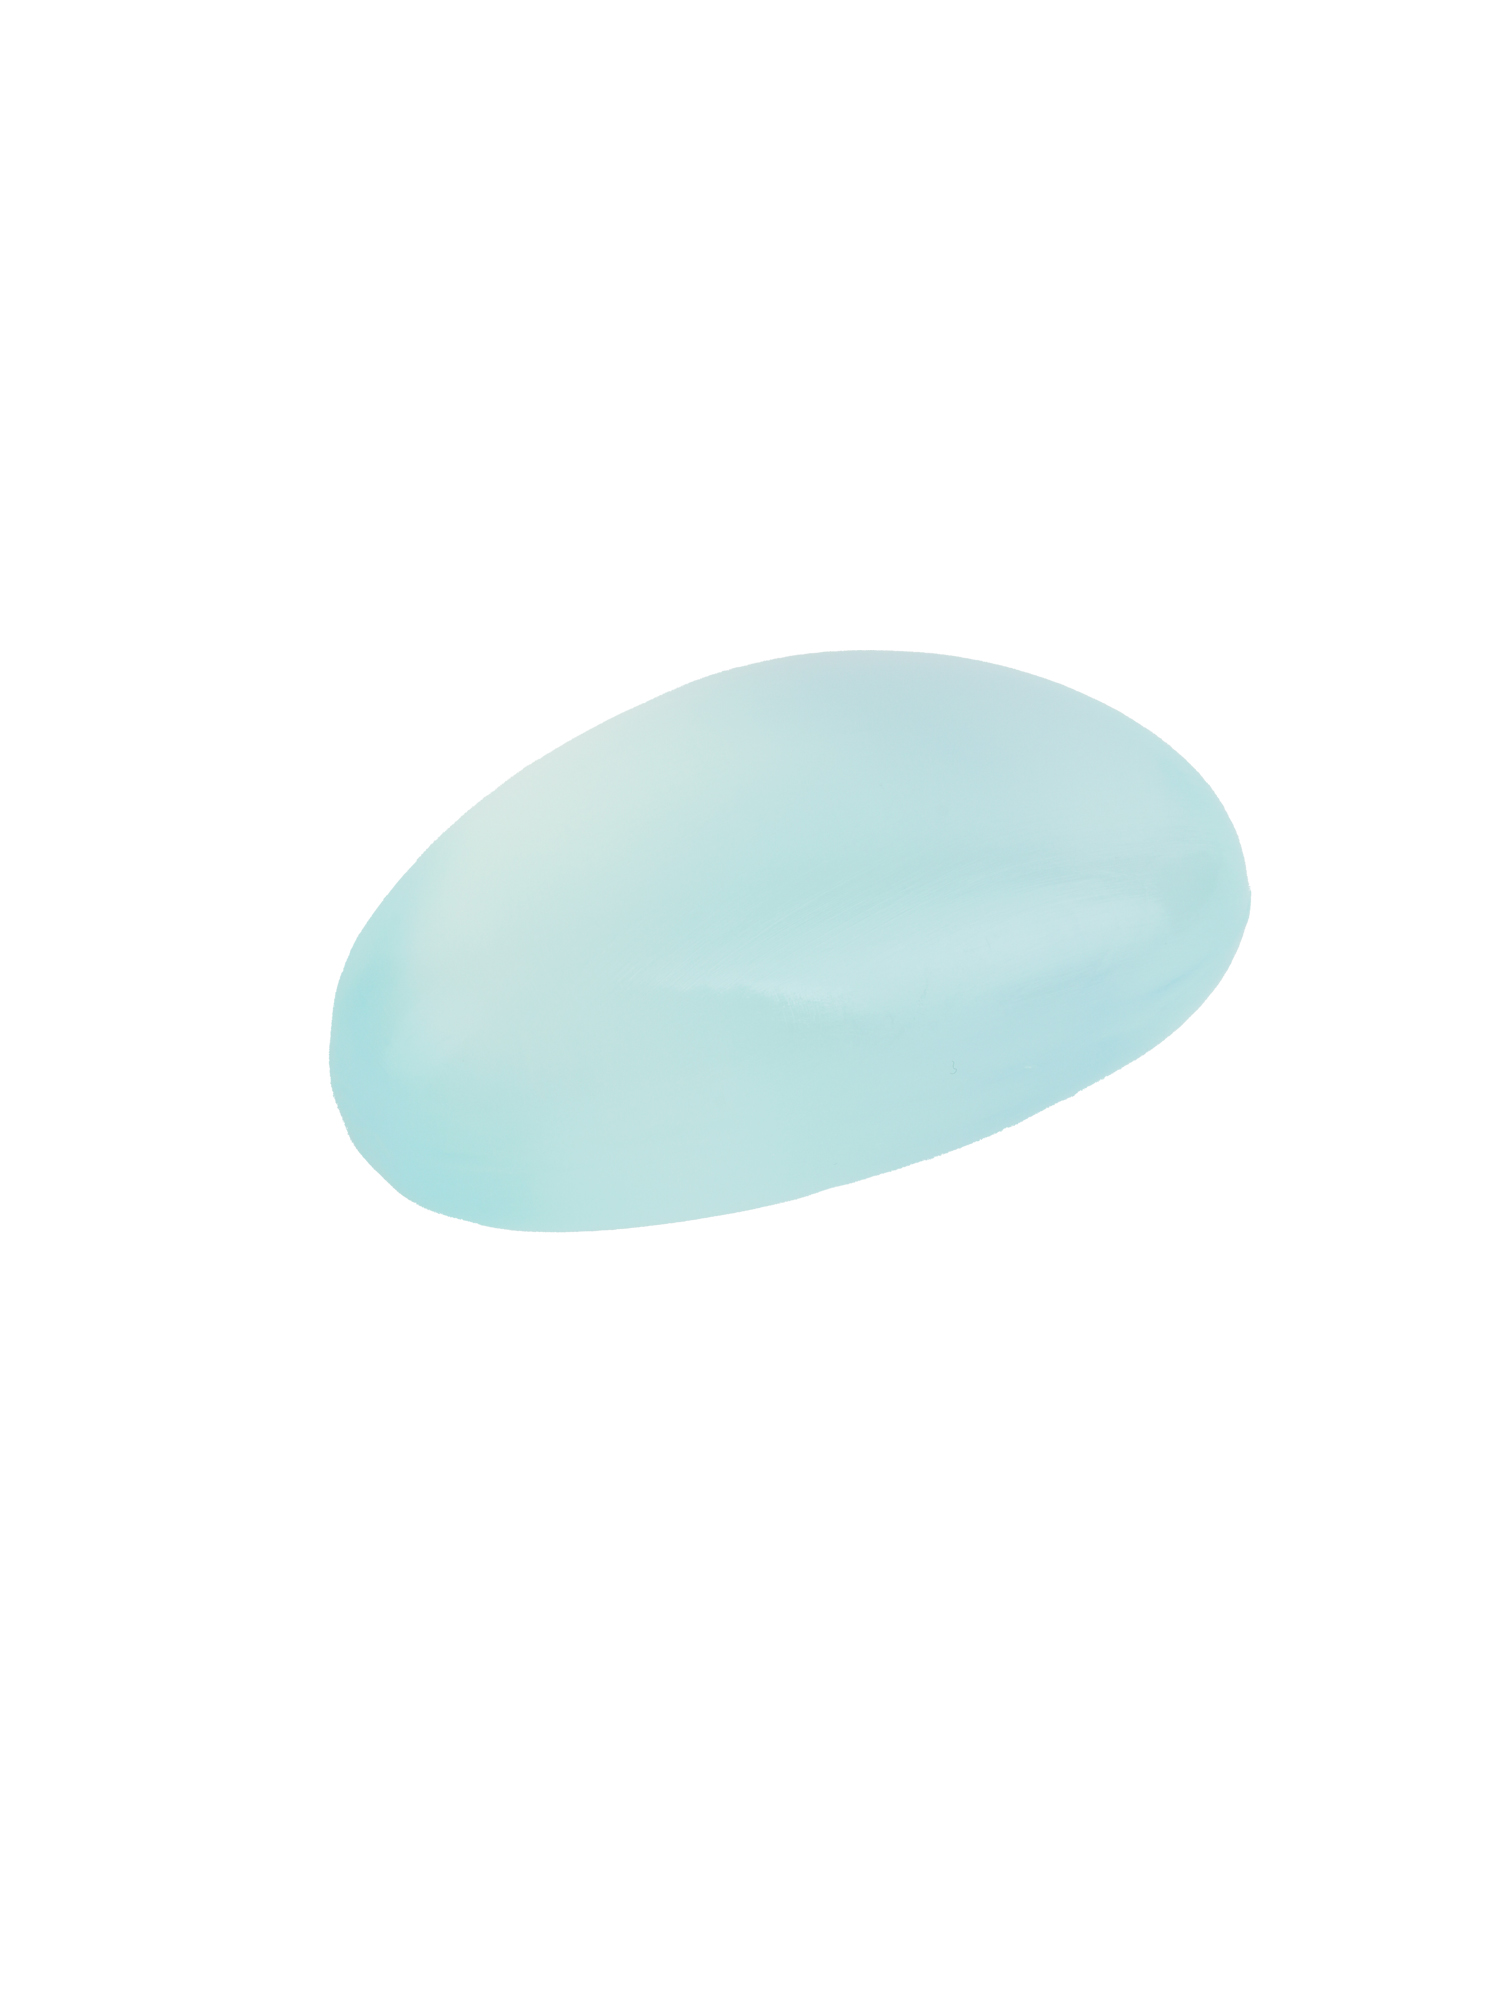 Seaglass Soap Cool Mint